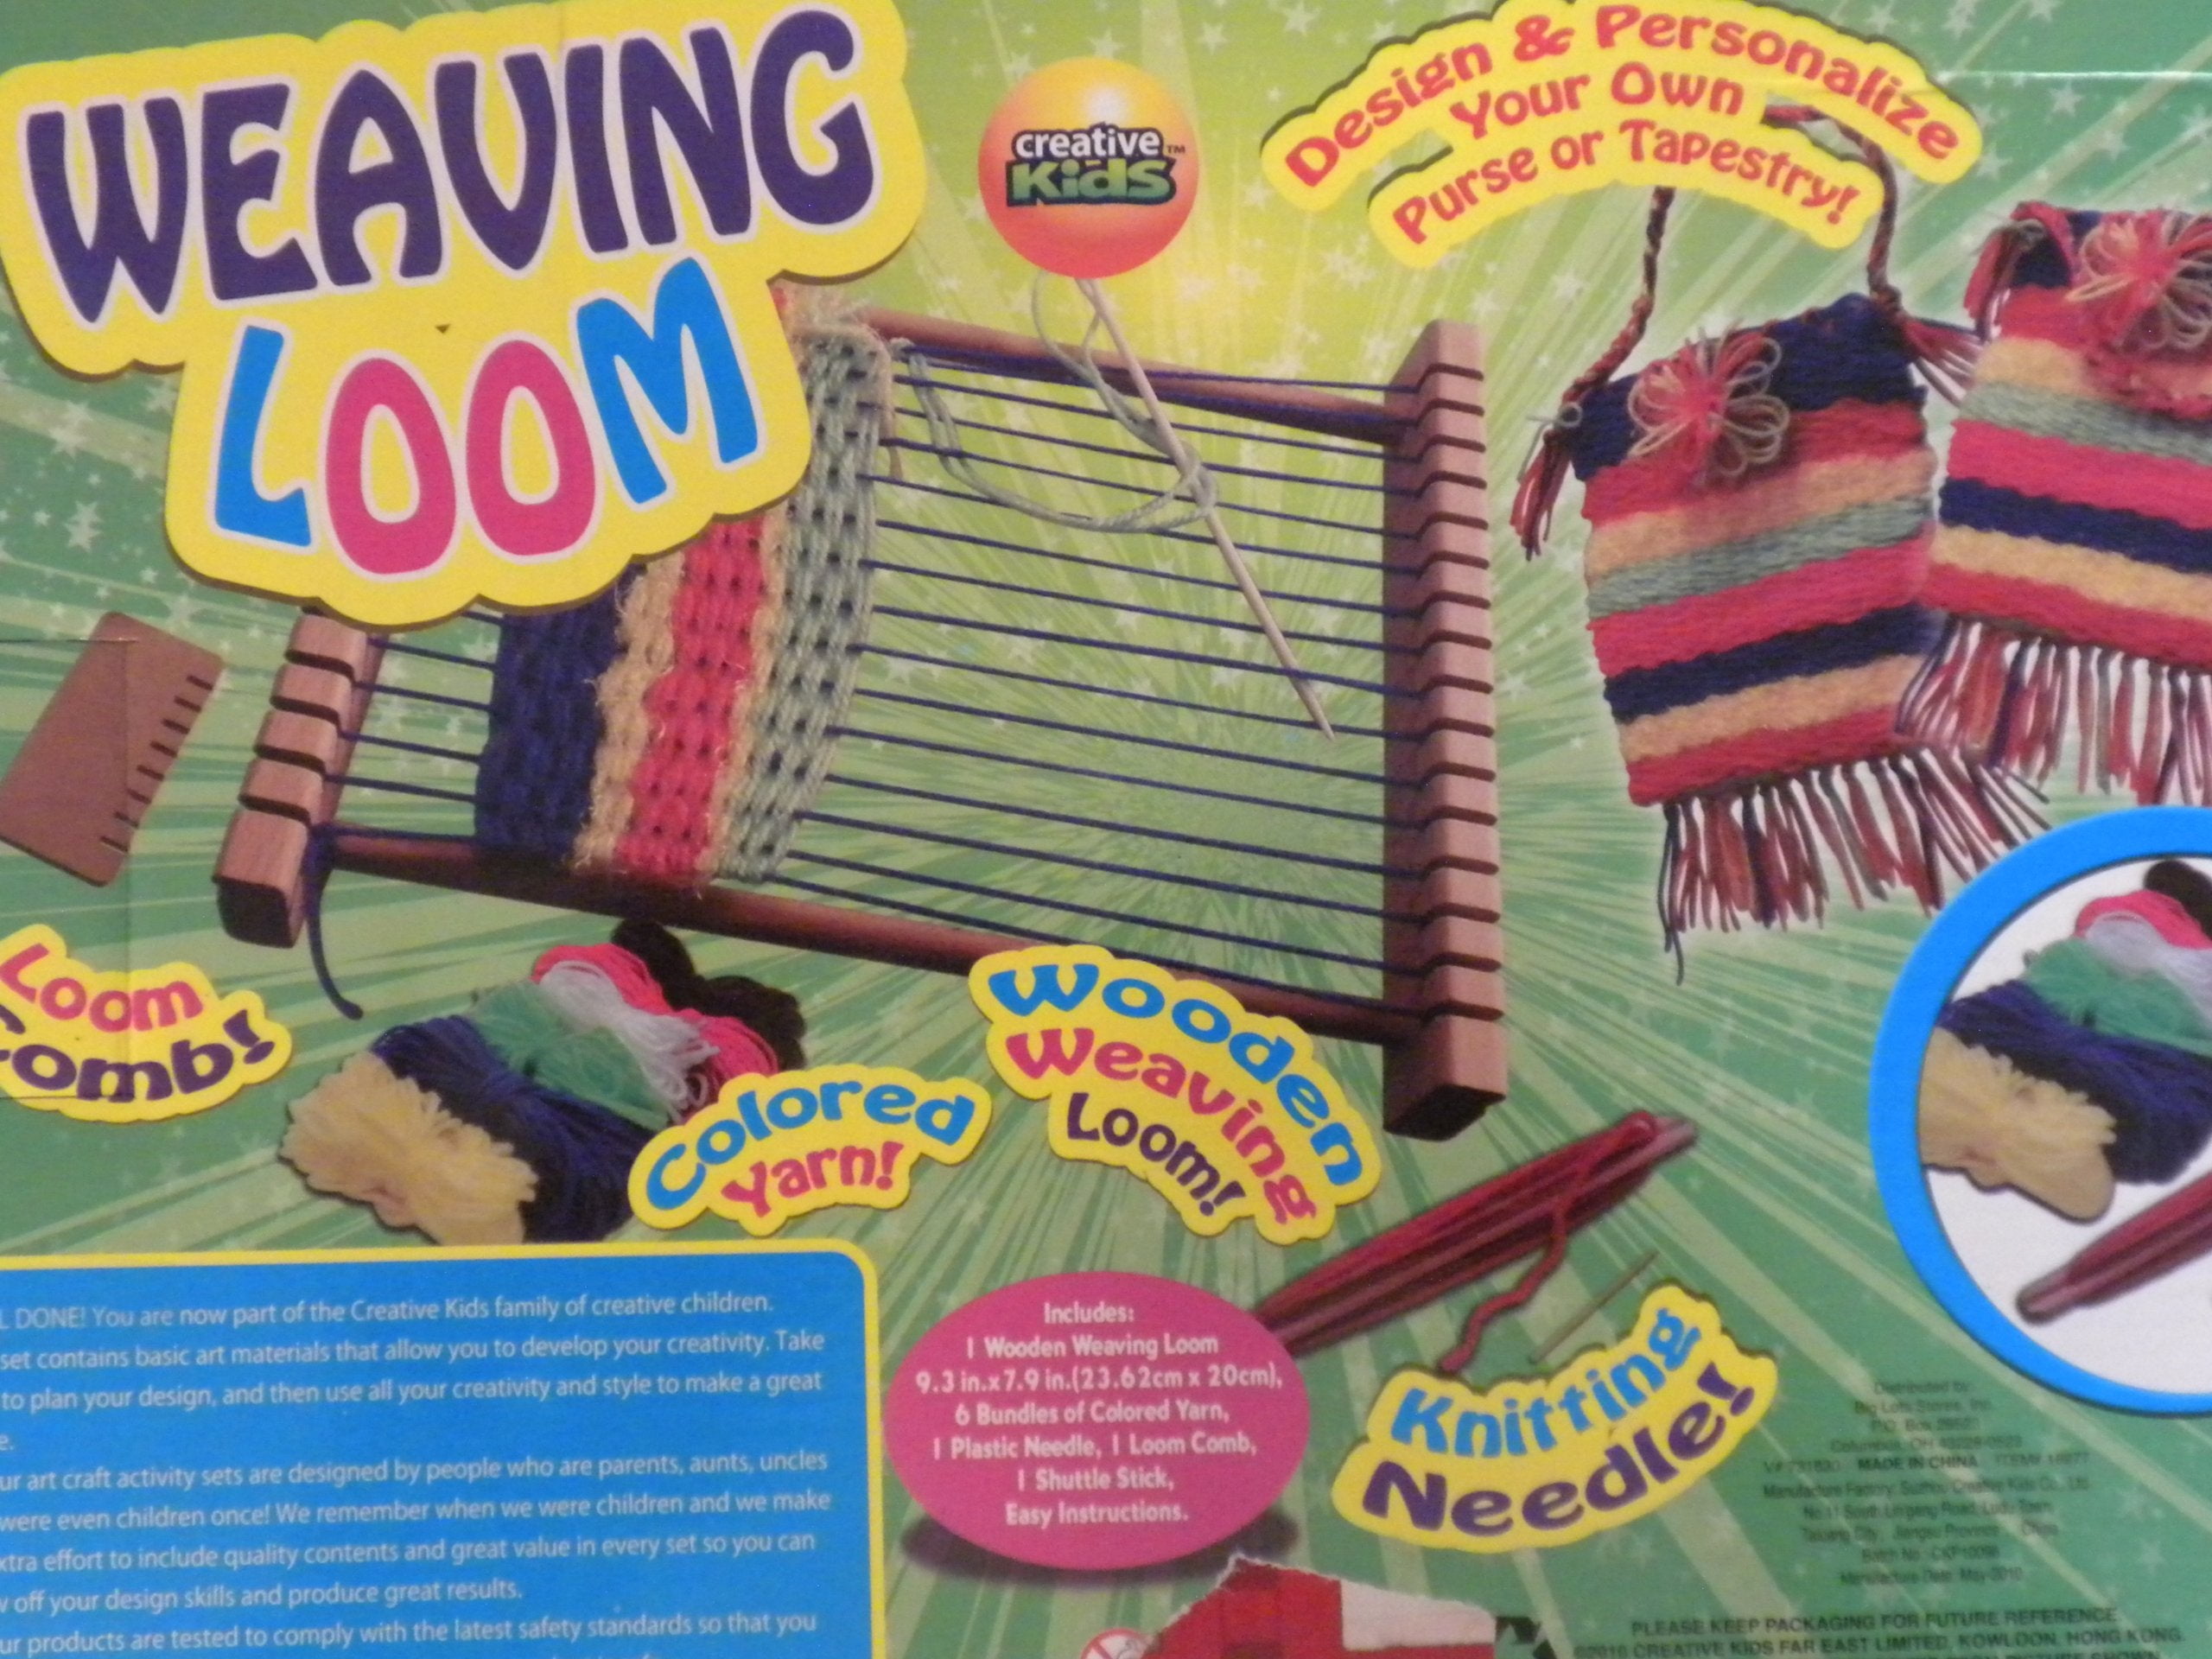 Kids Weaving Loom by GCodePrintr